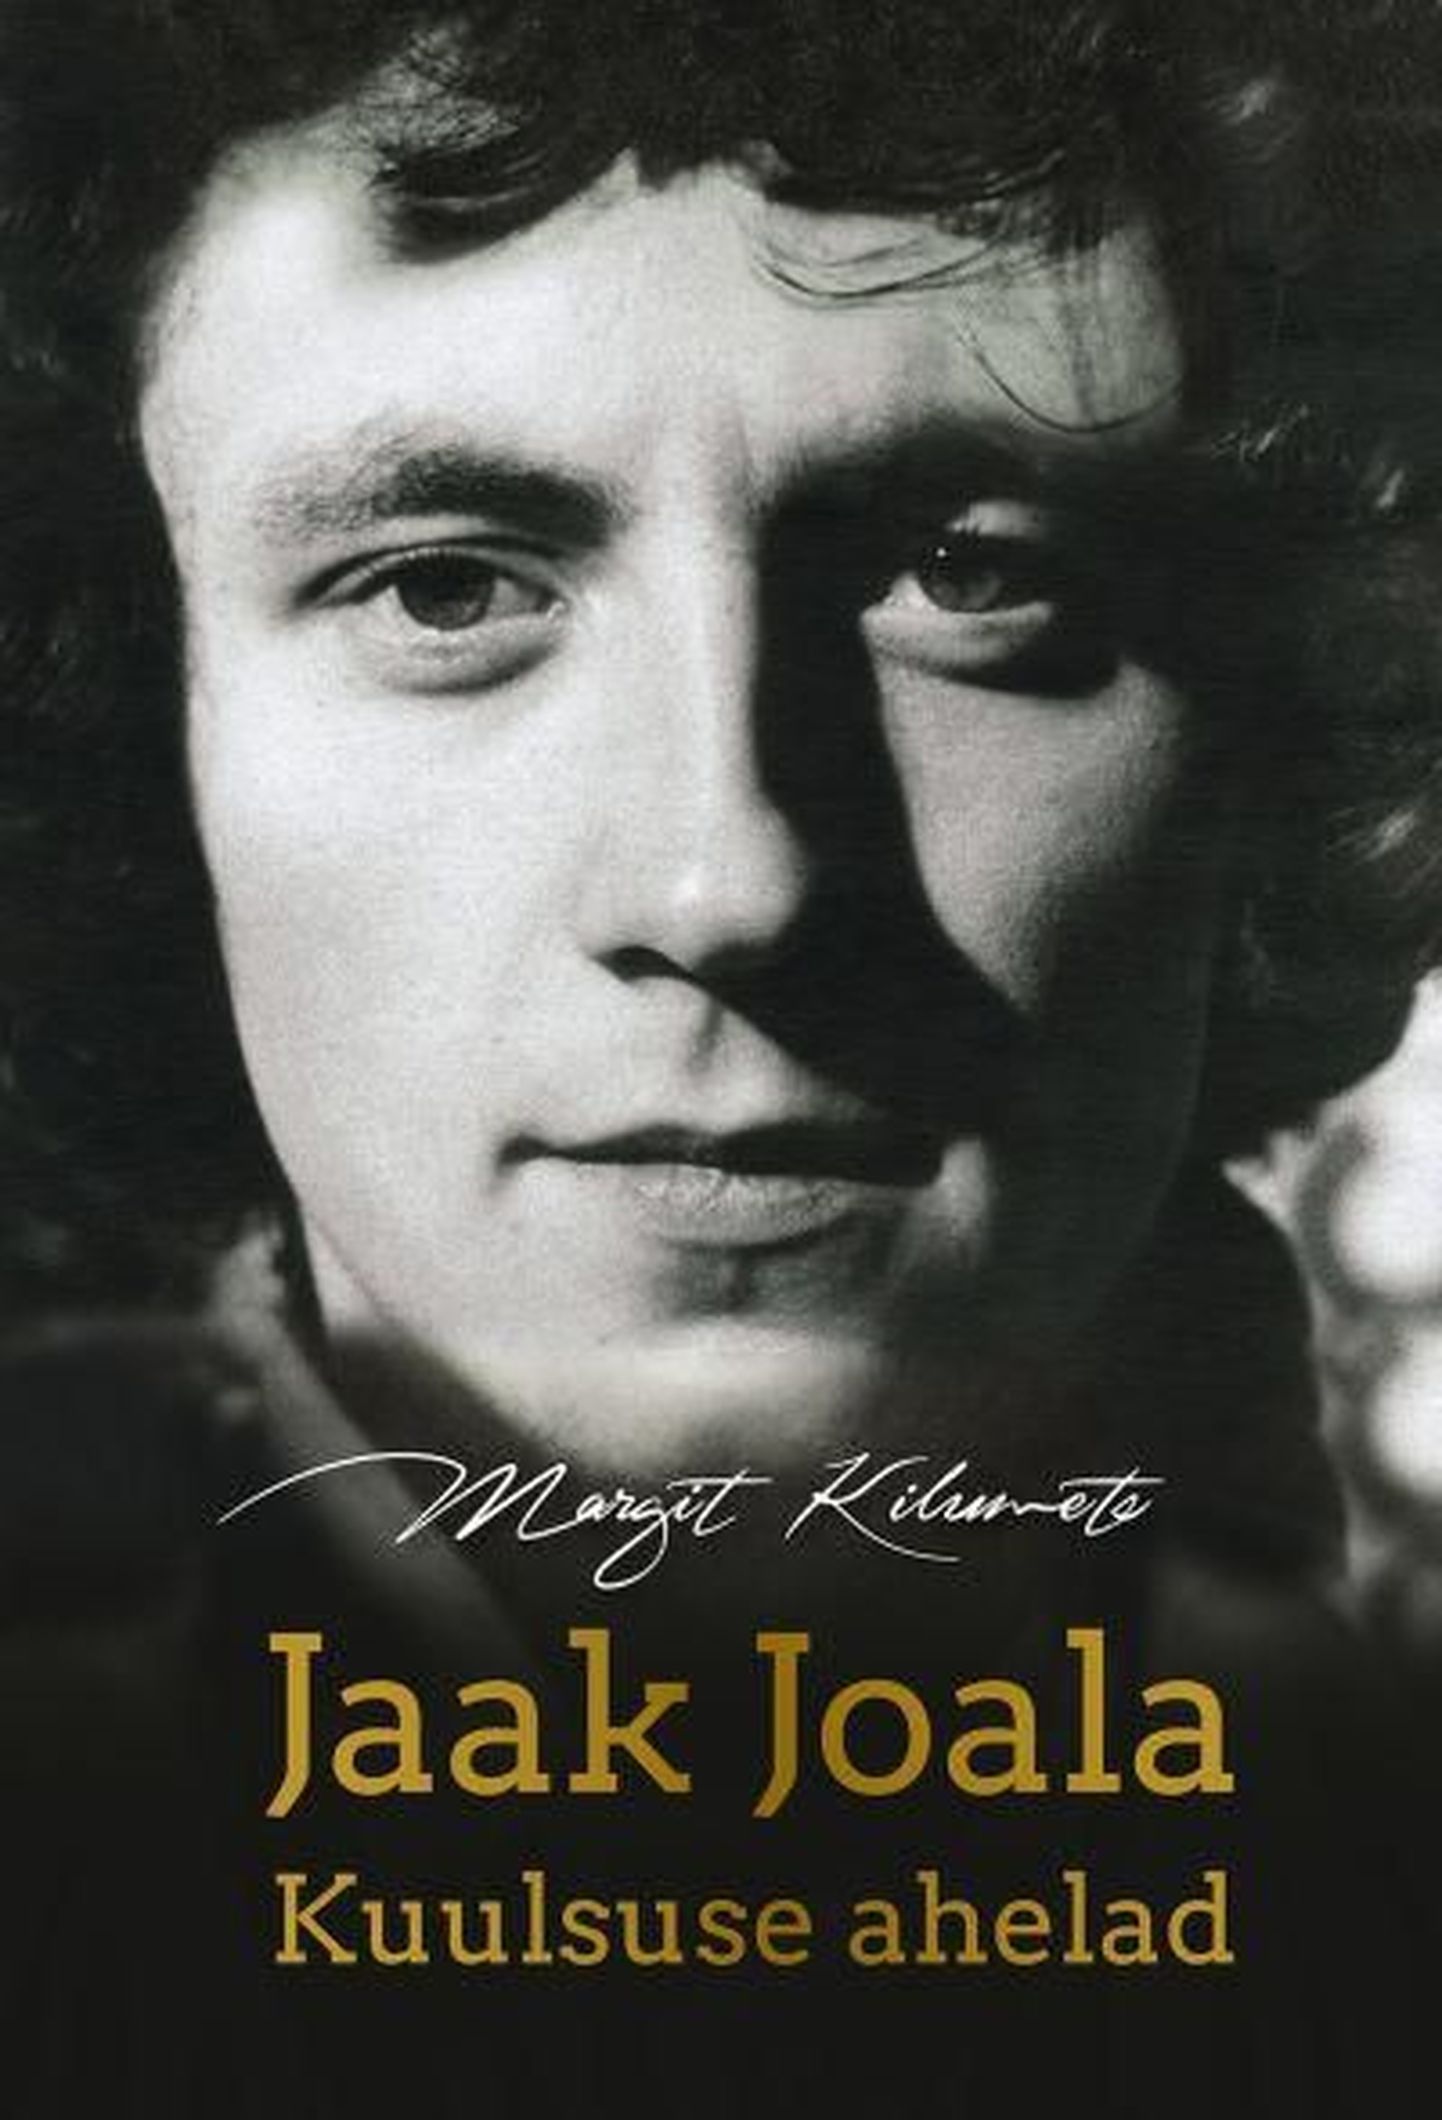 Valuutabaaris esitleti Jaak Joala biograafiat "Kuulsuse ahelad", autoriks Margit Kilumets.